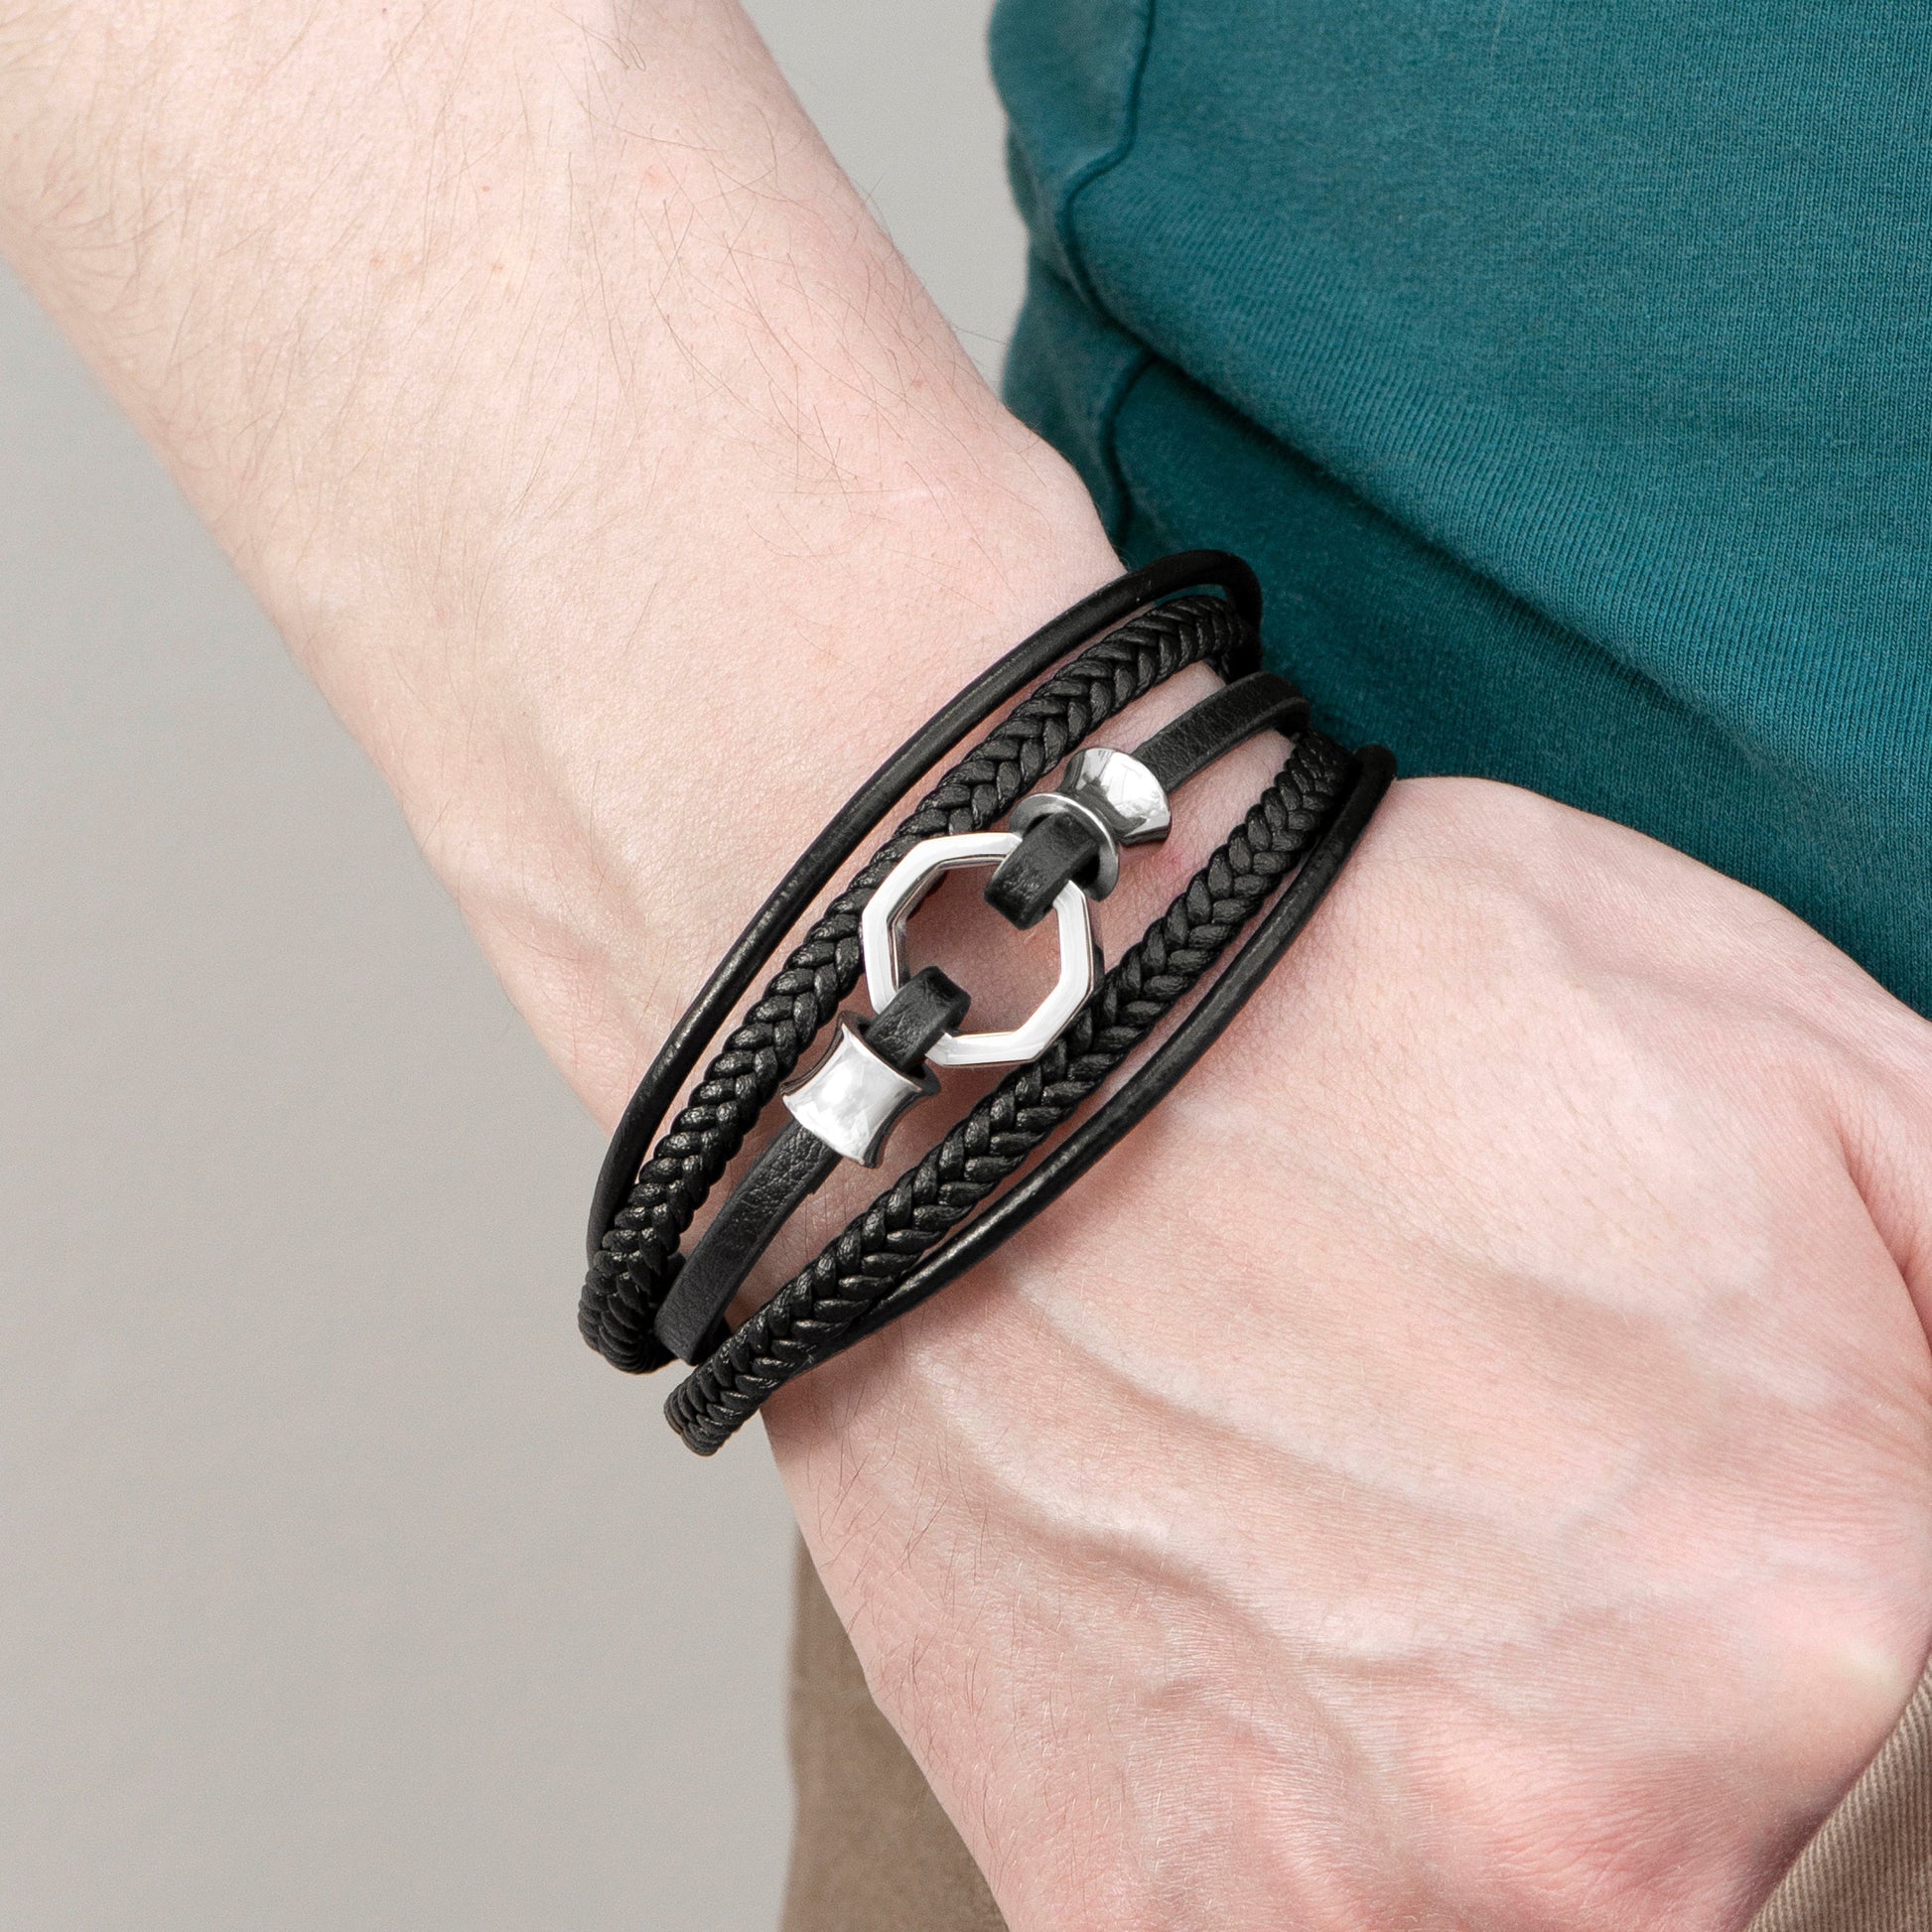 Personalized Men's Bracelets - Personalized Men's Mayfair Leather Bracelet in Silver 